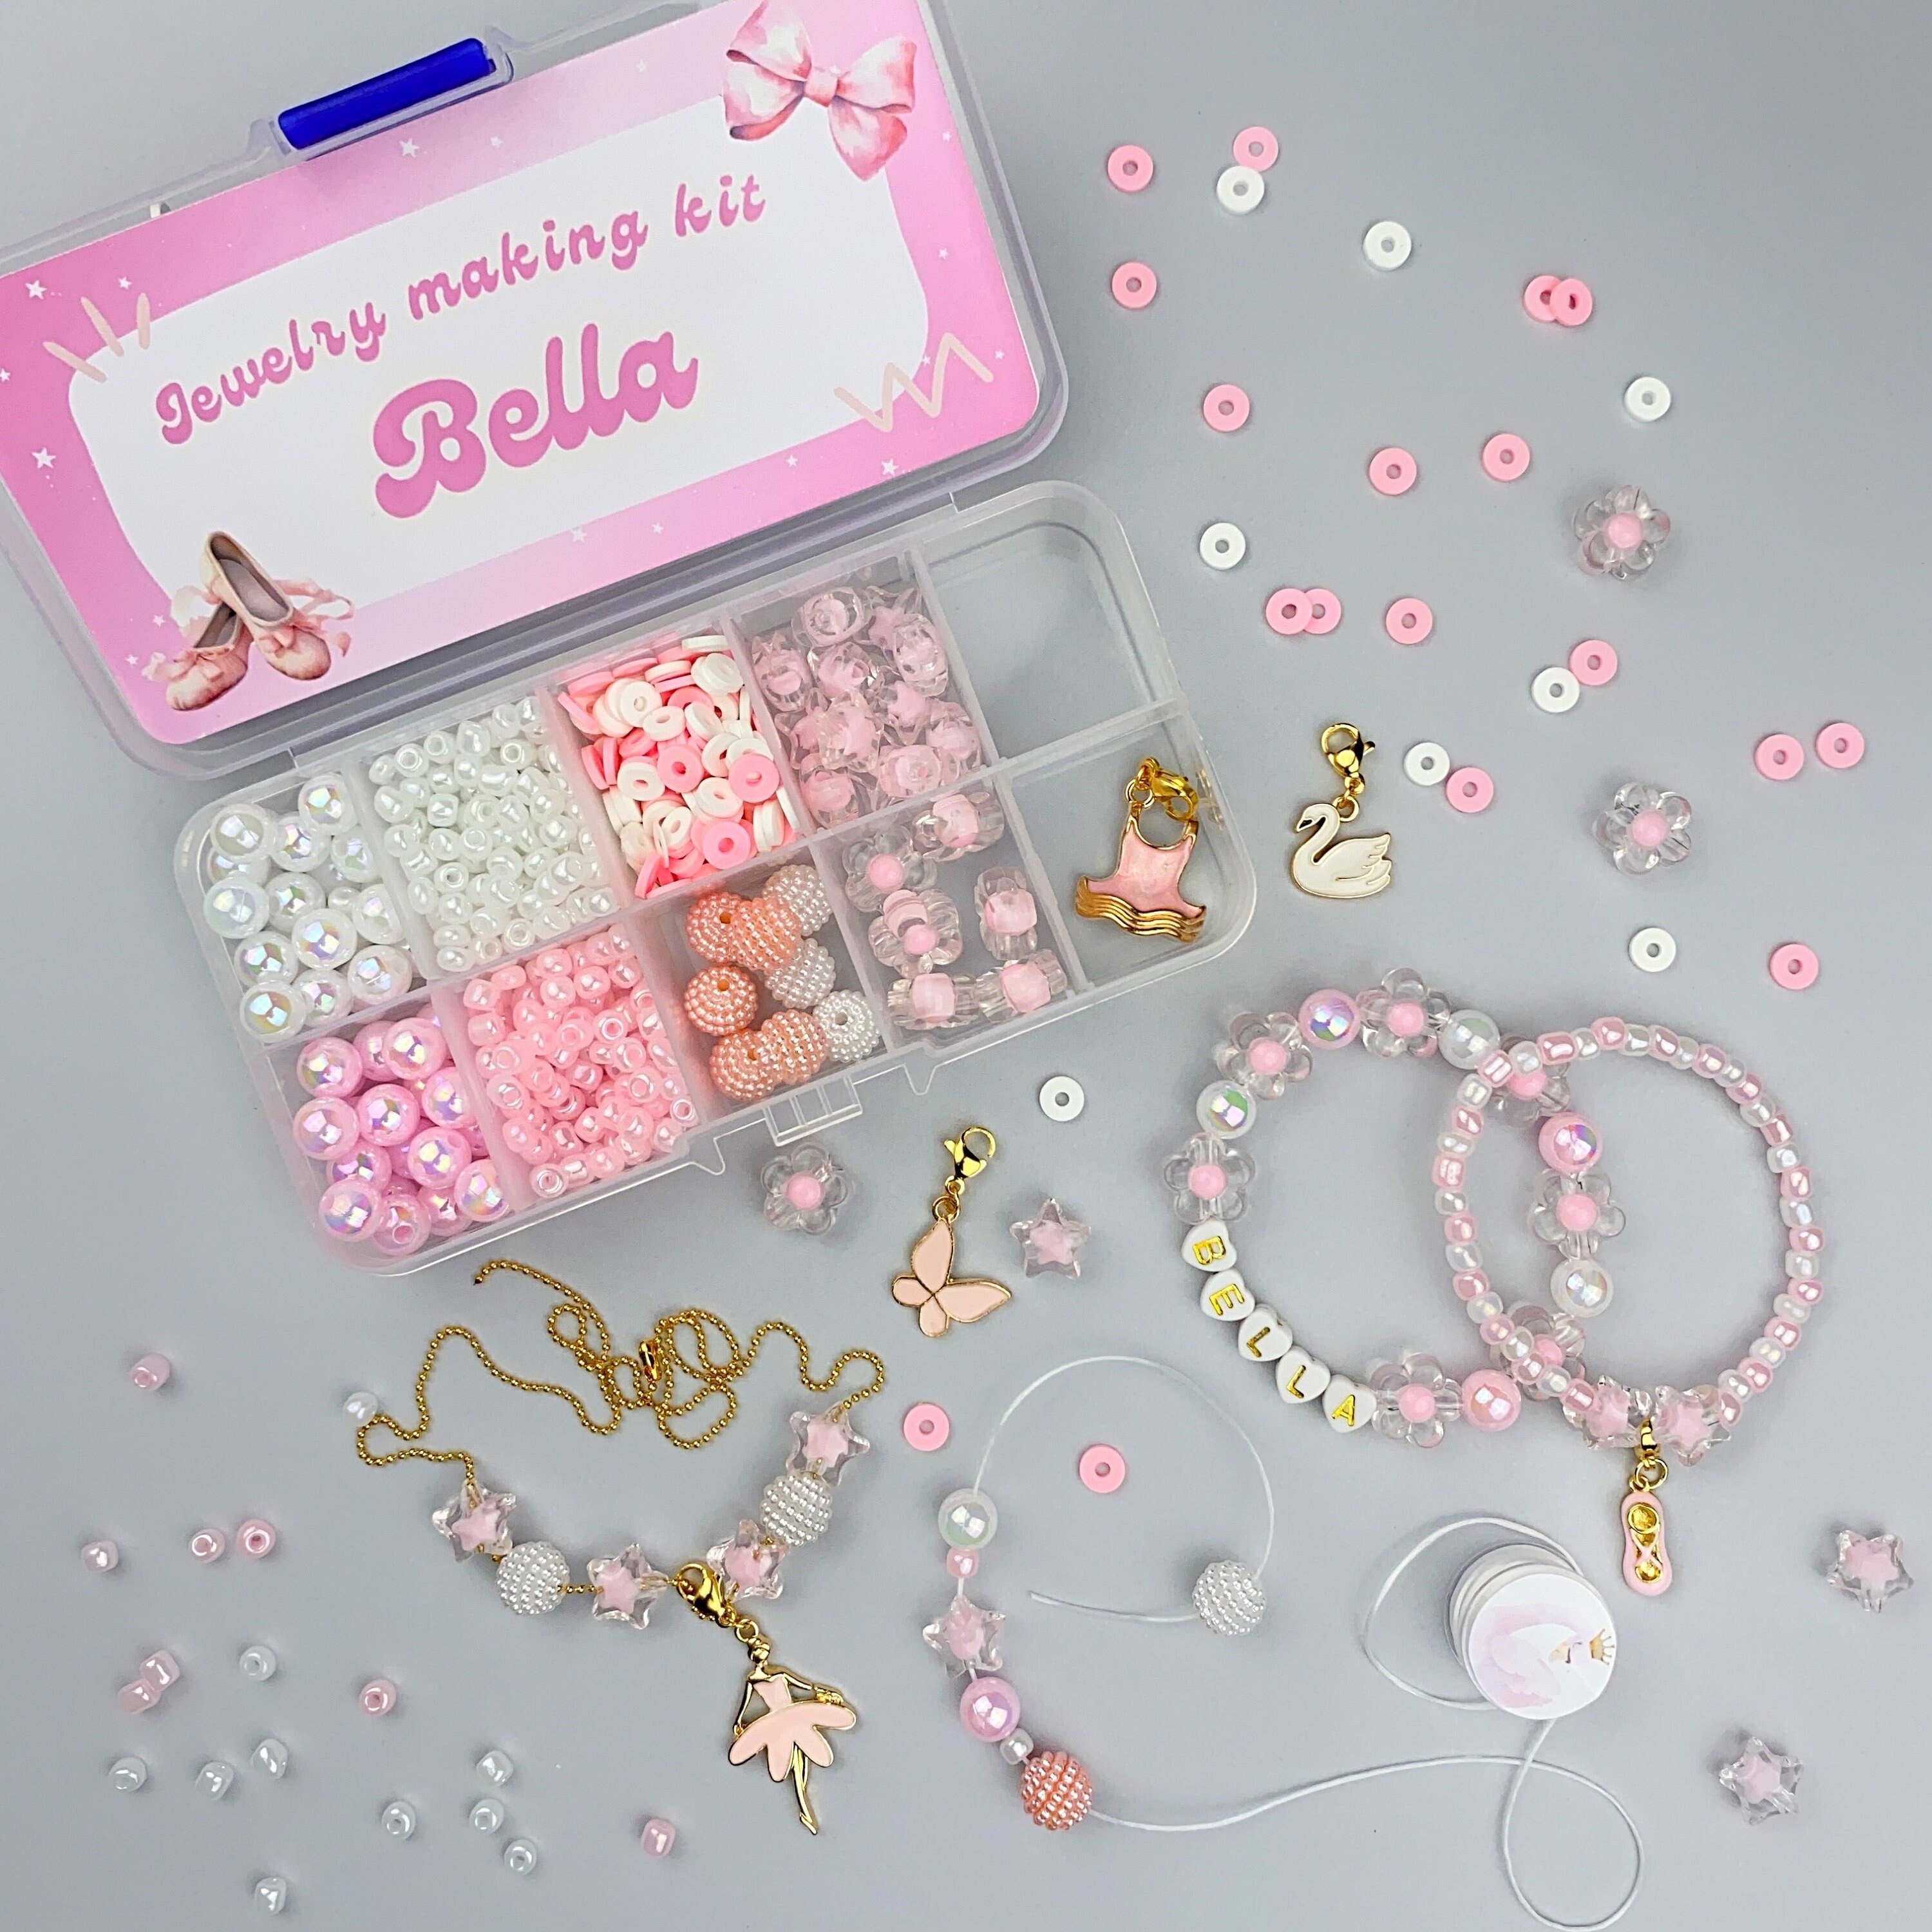 Girls All Kids Jewelry Making Kits in Kids Jewelry Making Kits 